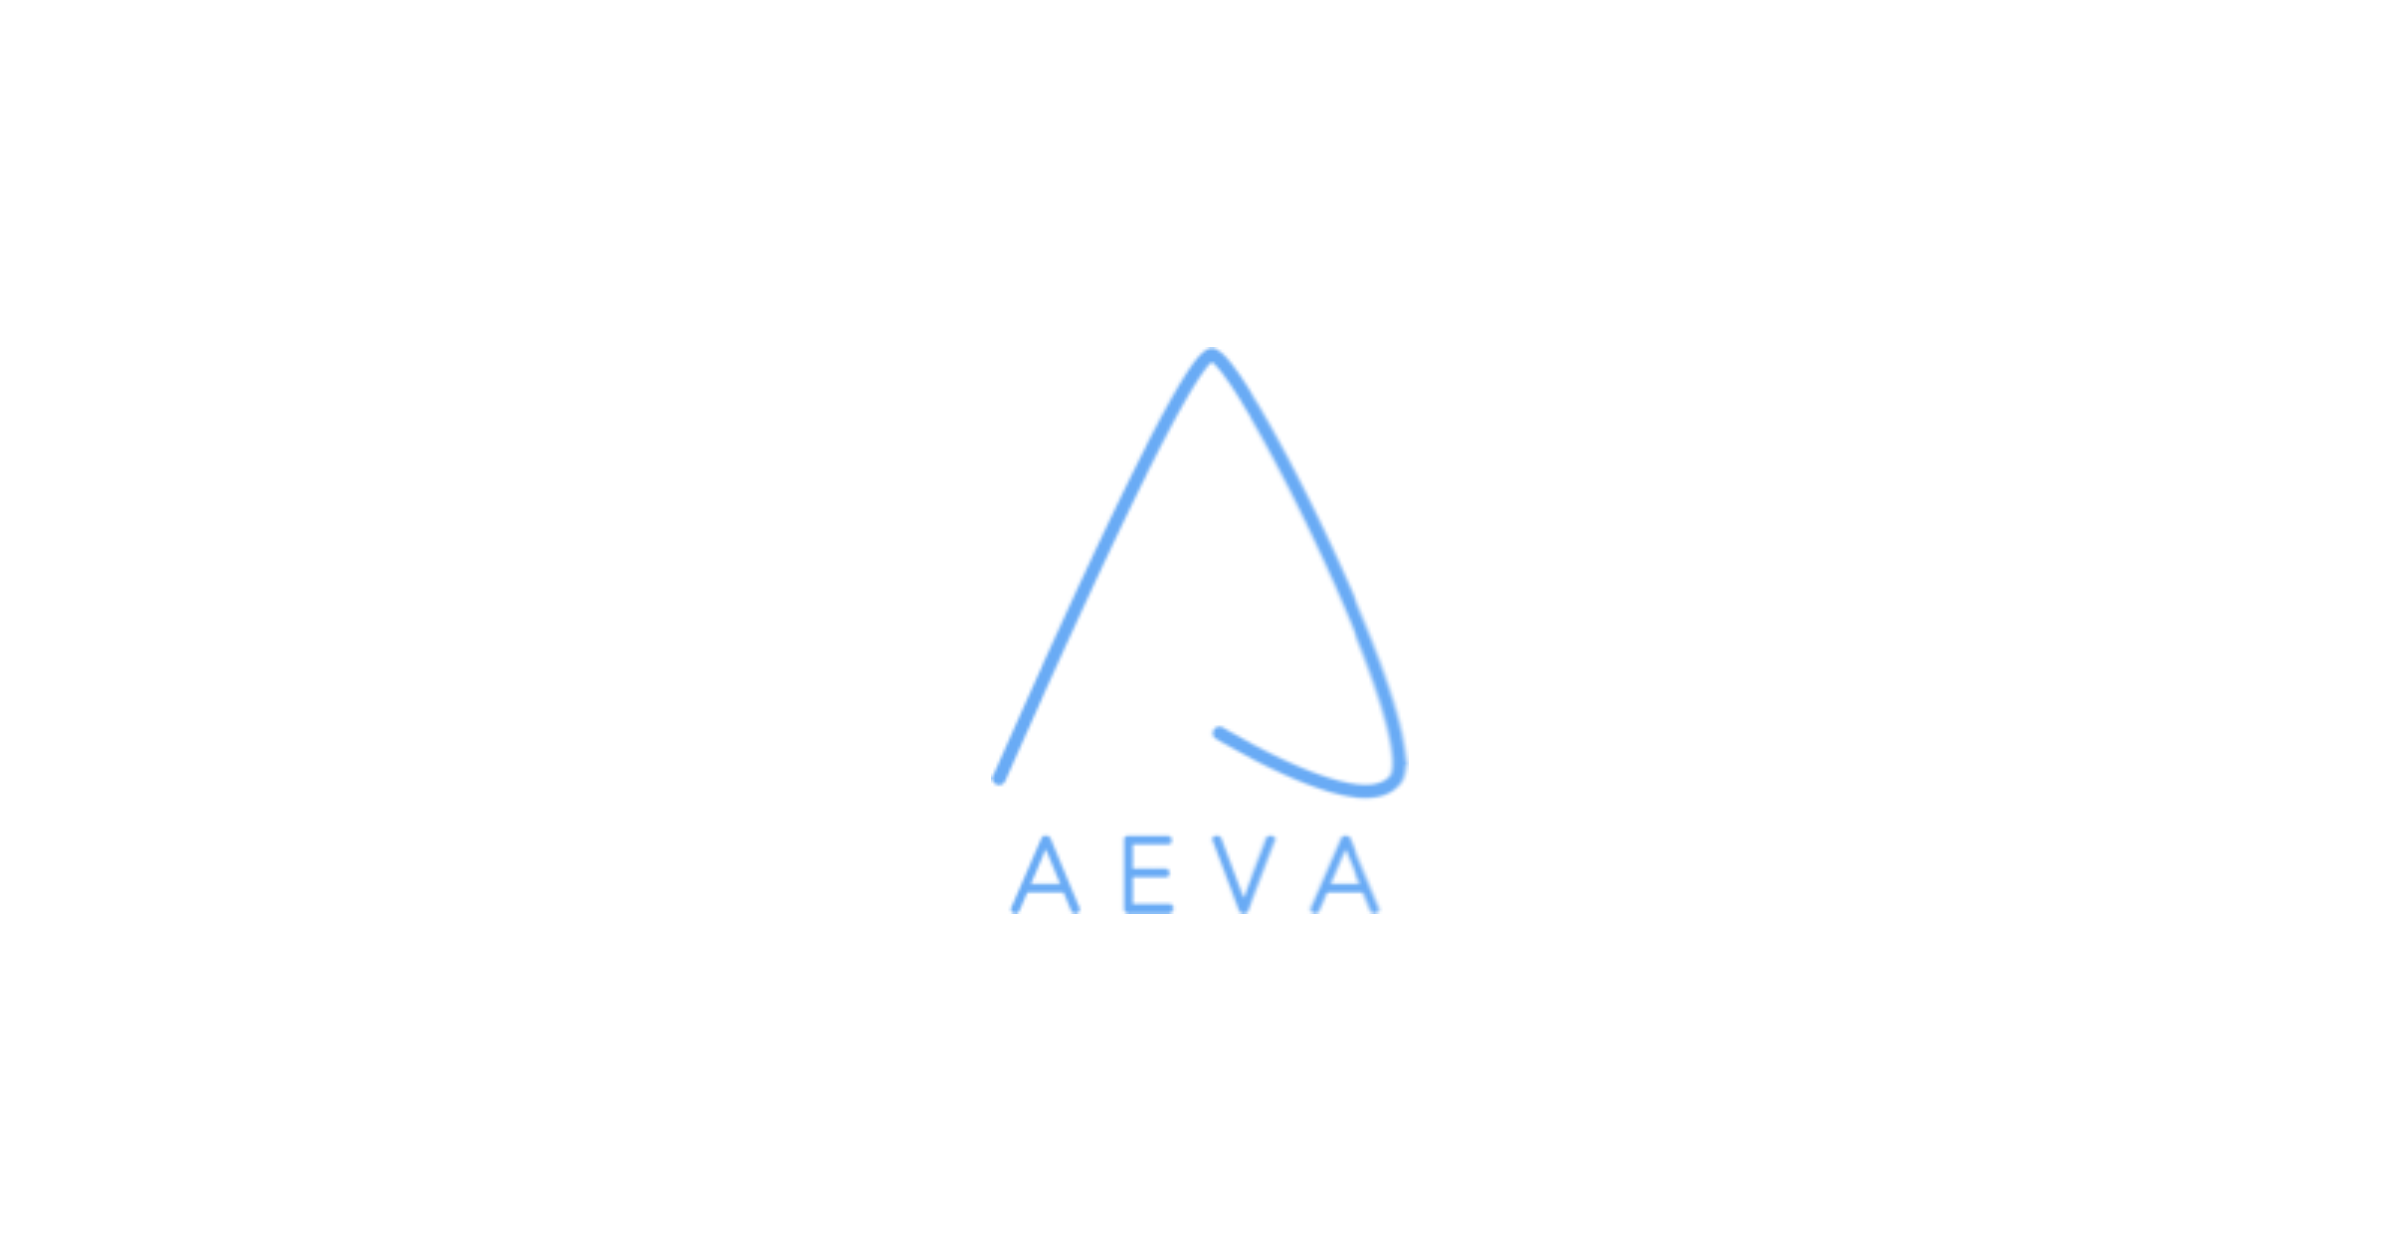 Aeva lidar maker logo